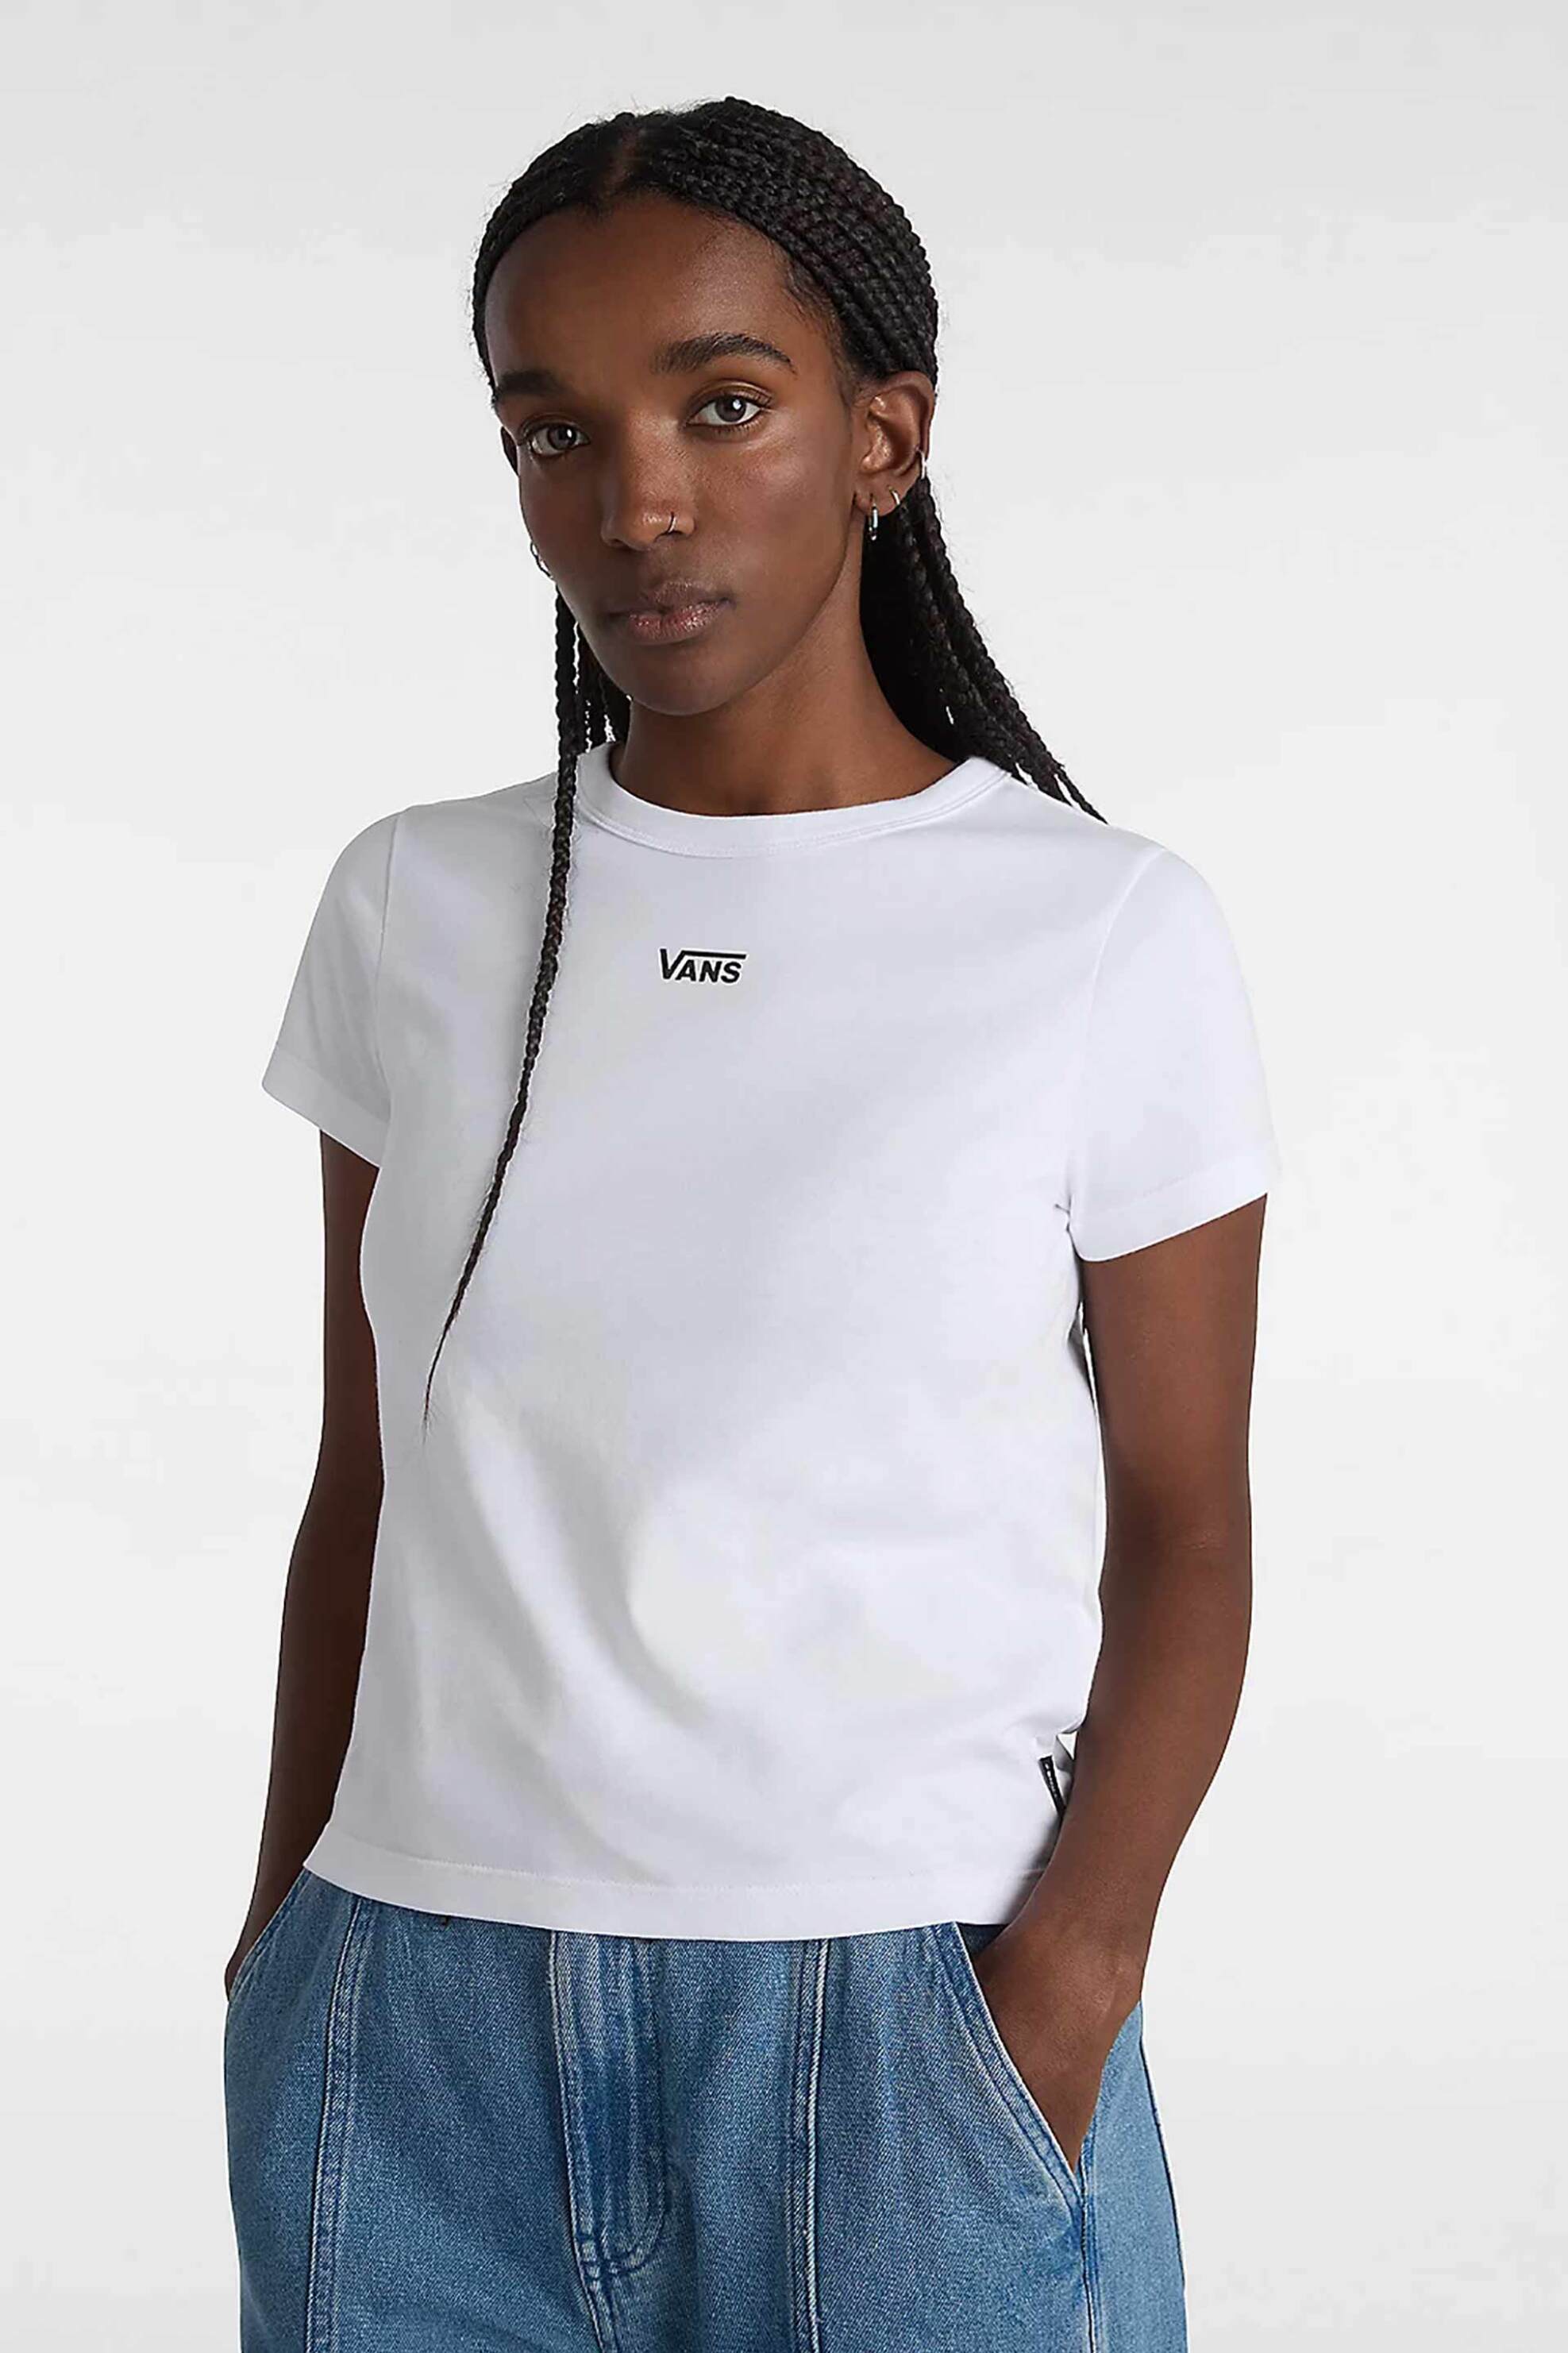 Γυναικεία Ρούχα & Αξεσουάρ > Γυναικεία Ρούχα > Γυναικεία Τοπ > Γυναικεία T-Shirts Vans γυναικείο βαμβακερό T-shirt μονόχρωμο με contrast logo print "Basic Mini" - VN000JDQWHT1 Λευκό